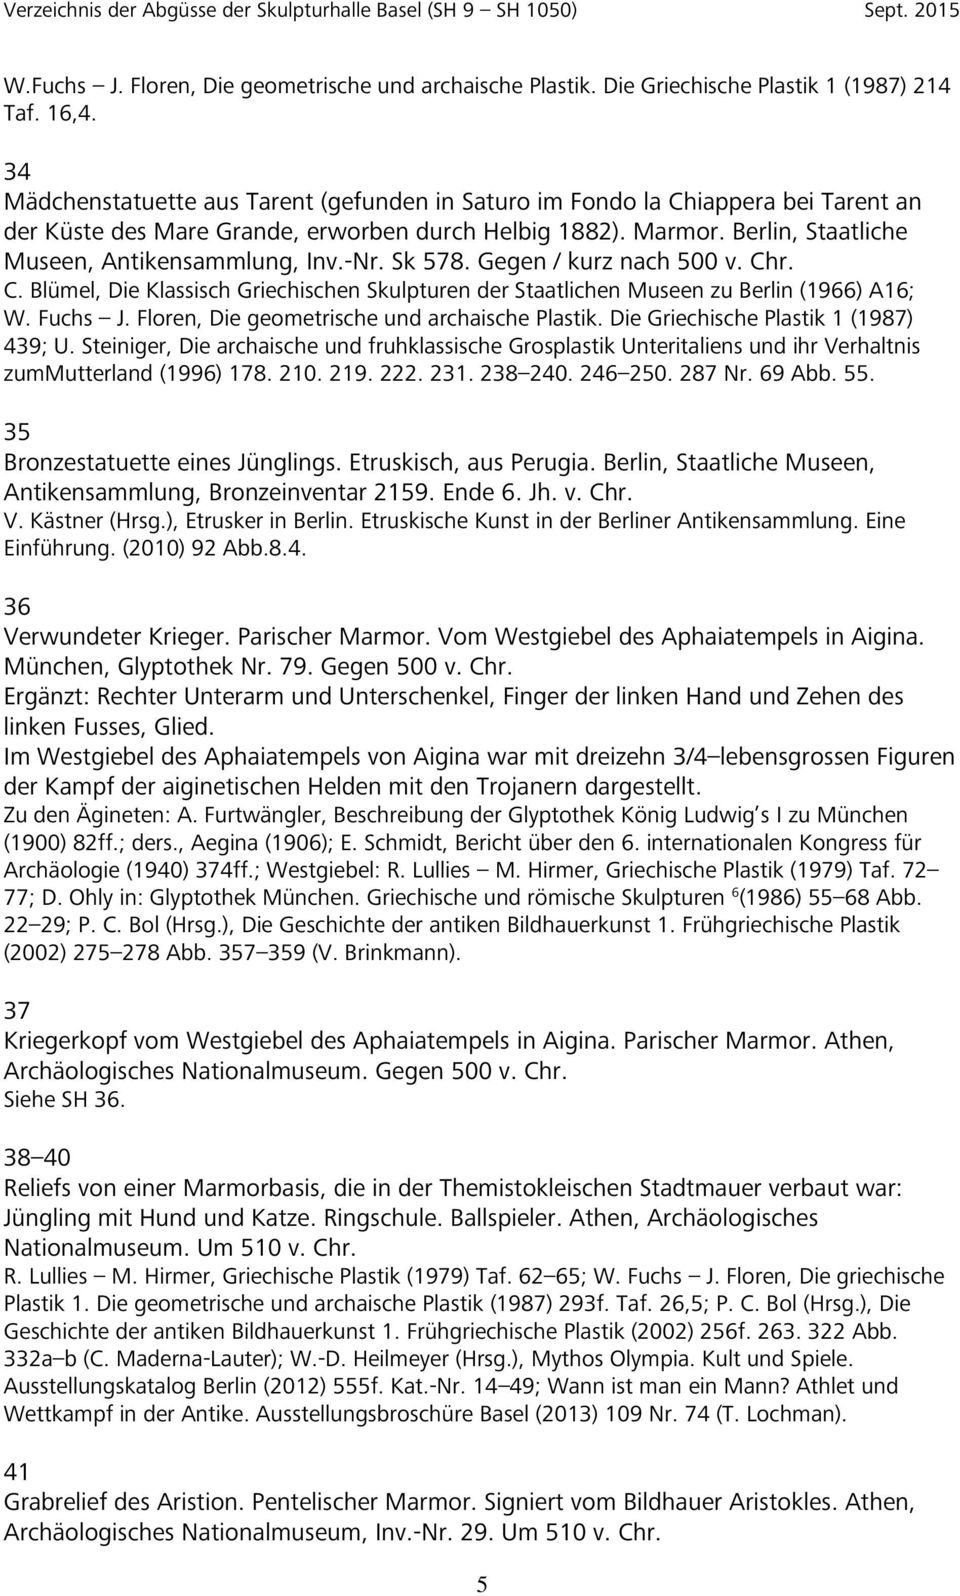 -Nr. Sk 578. Gegen / kurz nach 500 v. Chr. C. Blümel, Die Klassisch Griechischen Skulpturen der Staatlichen Museen zu Berlin (1966) A16; W. Fuchs J. Floren, Die geometrische und archaische Plastik.